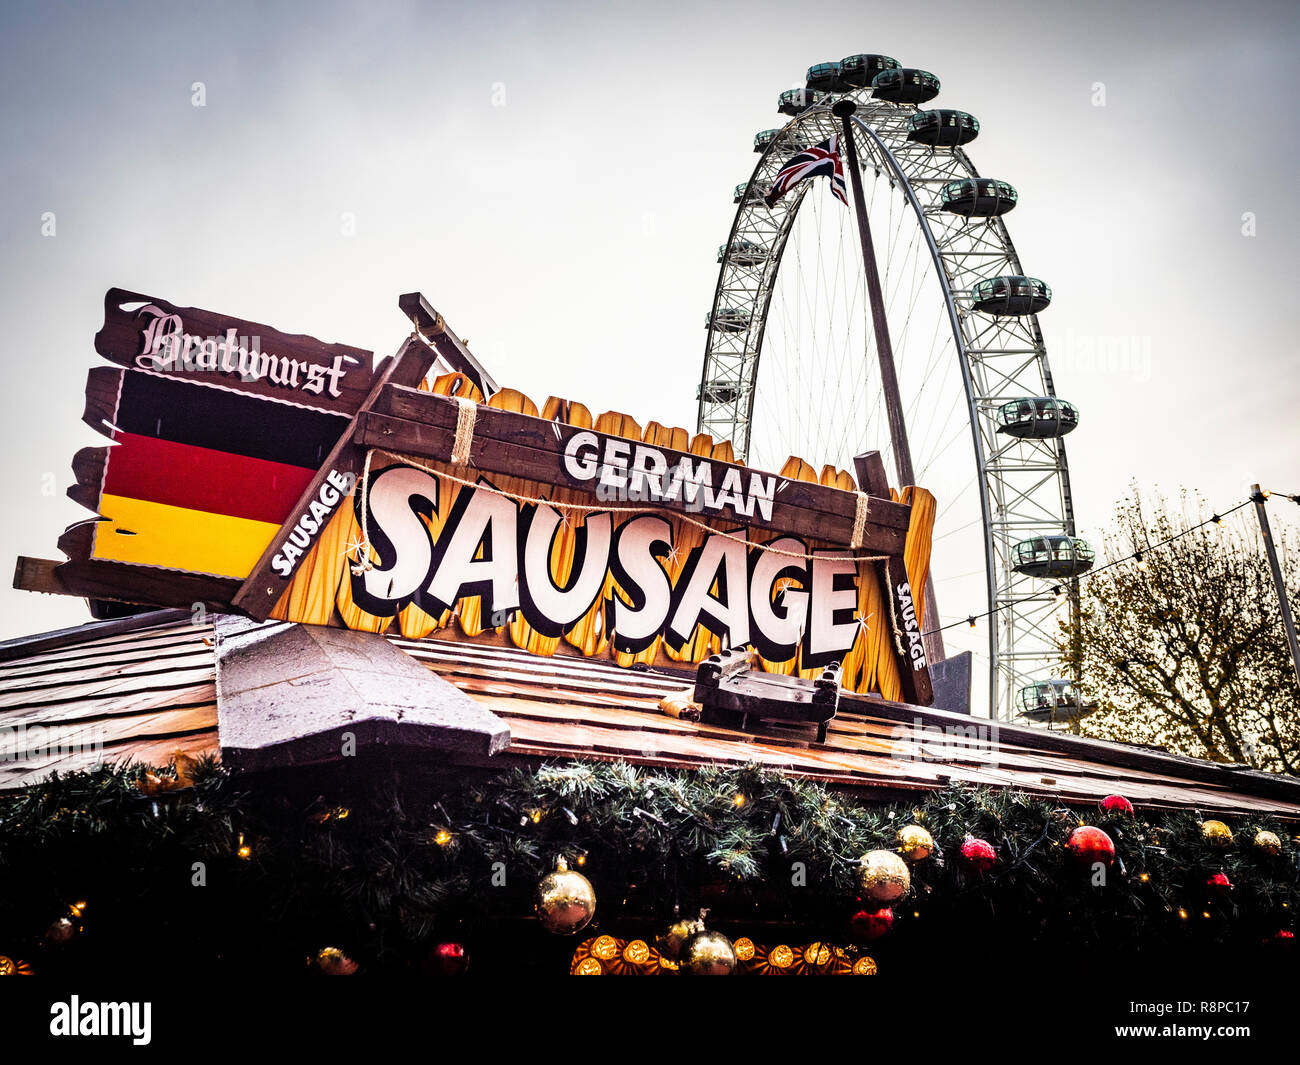 Saucisse allemande food Marché d'hiver à Southbank, Londres, Royaume-Uni. Banque D'Images